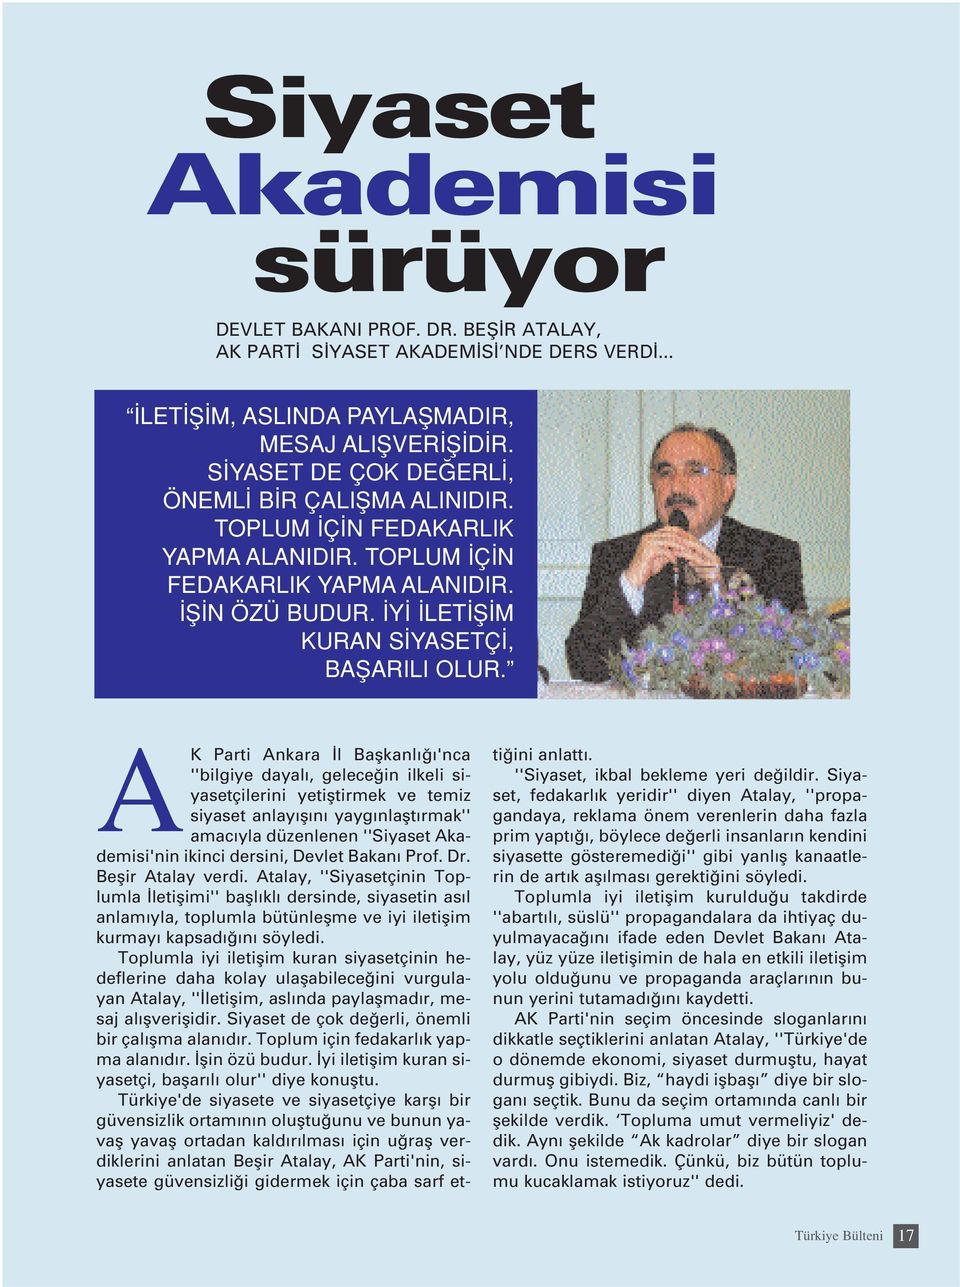 AK Parti Ankara l Baflkanl 'nca ''bilgiye dayal, gelece in ilkeli siyasetçilerini yetifltirmek ve temiz siyaset anlay fl n yayg nlaflt rmak'' amac yla düzenlenen ''Siyaset Akademisi'nin ikinci